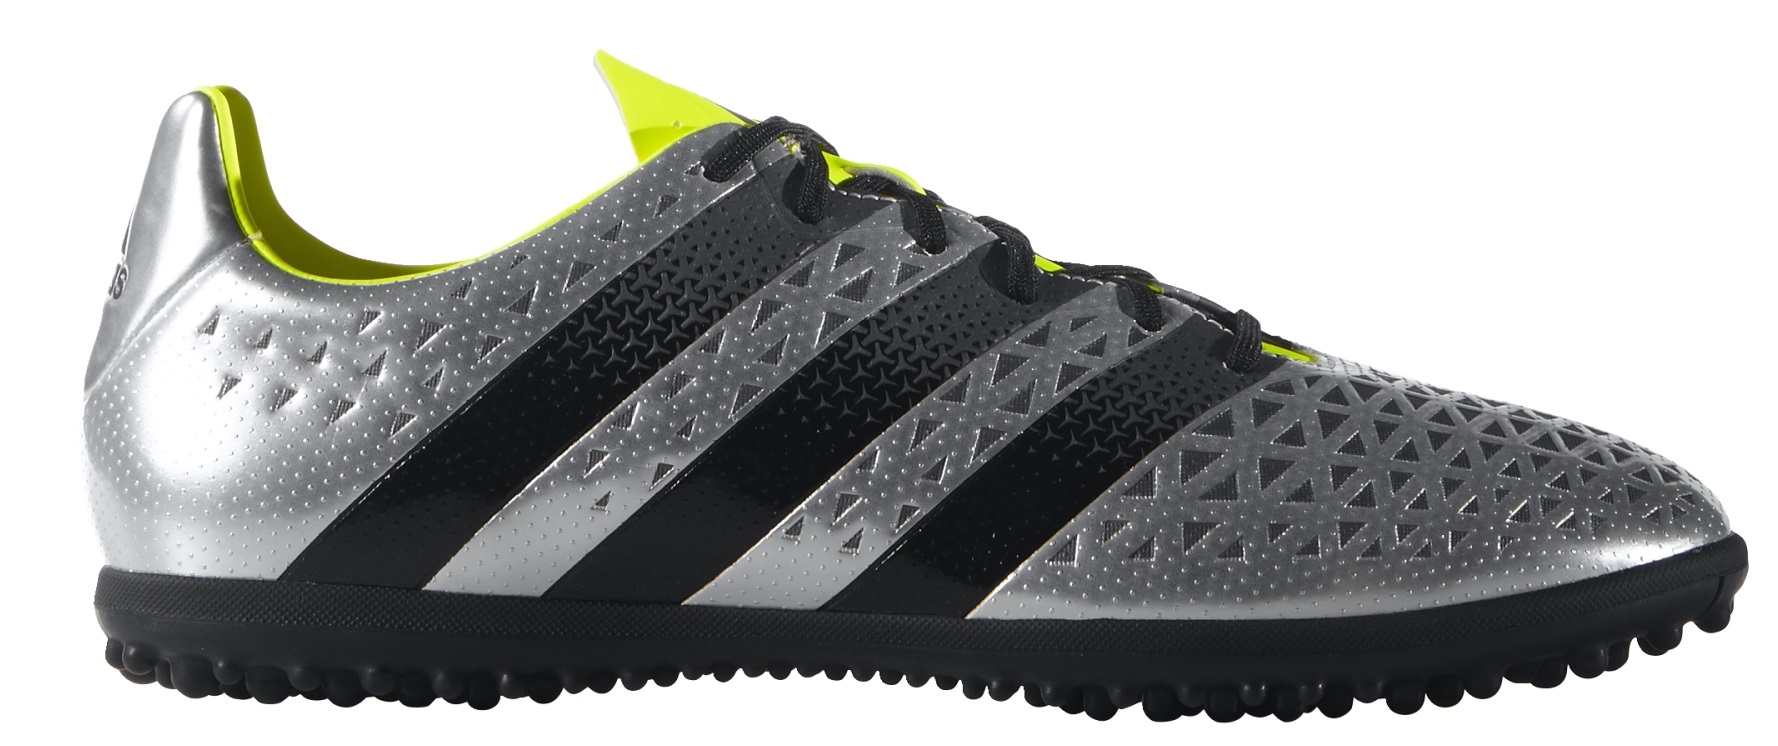 Increíble Influyente deletrear Zapatos de Fútbol Adidas Ace 16.3 TF colore plata negro - Adidas -  SportIT.com